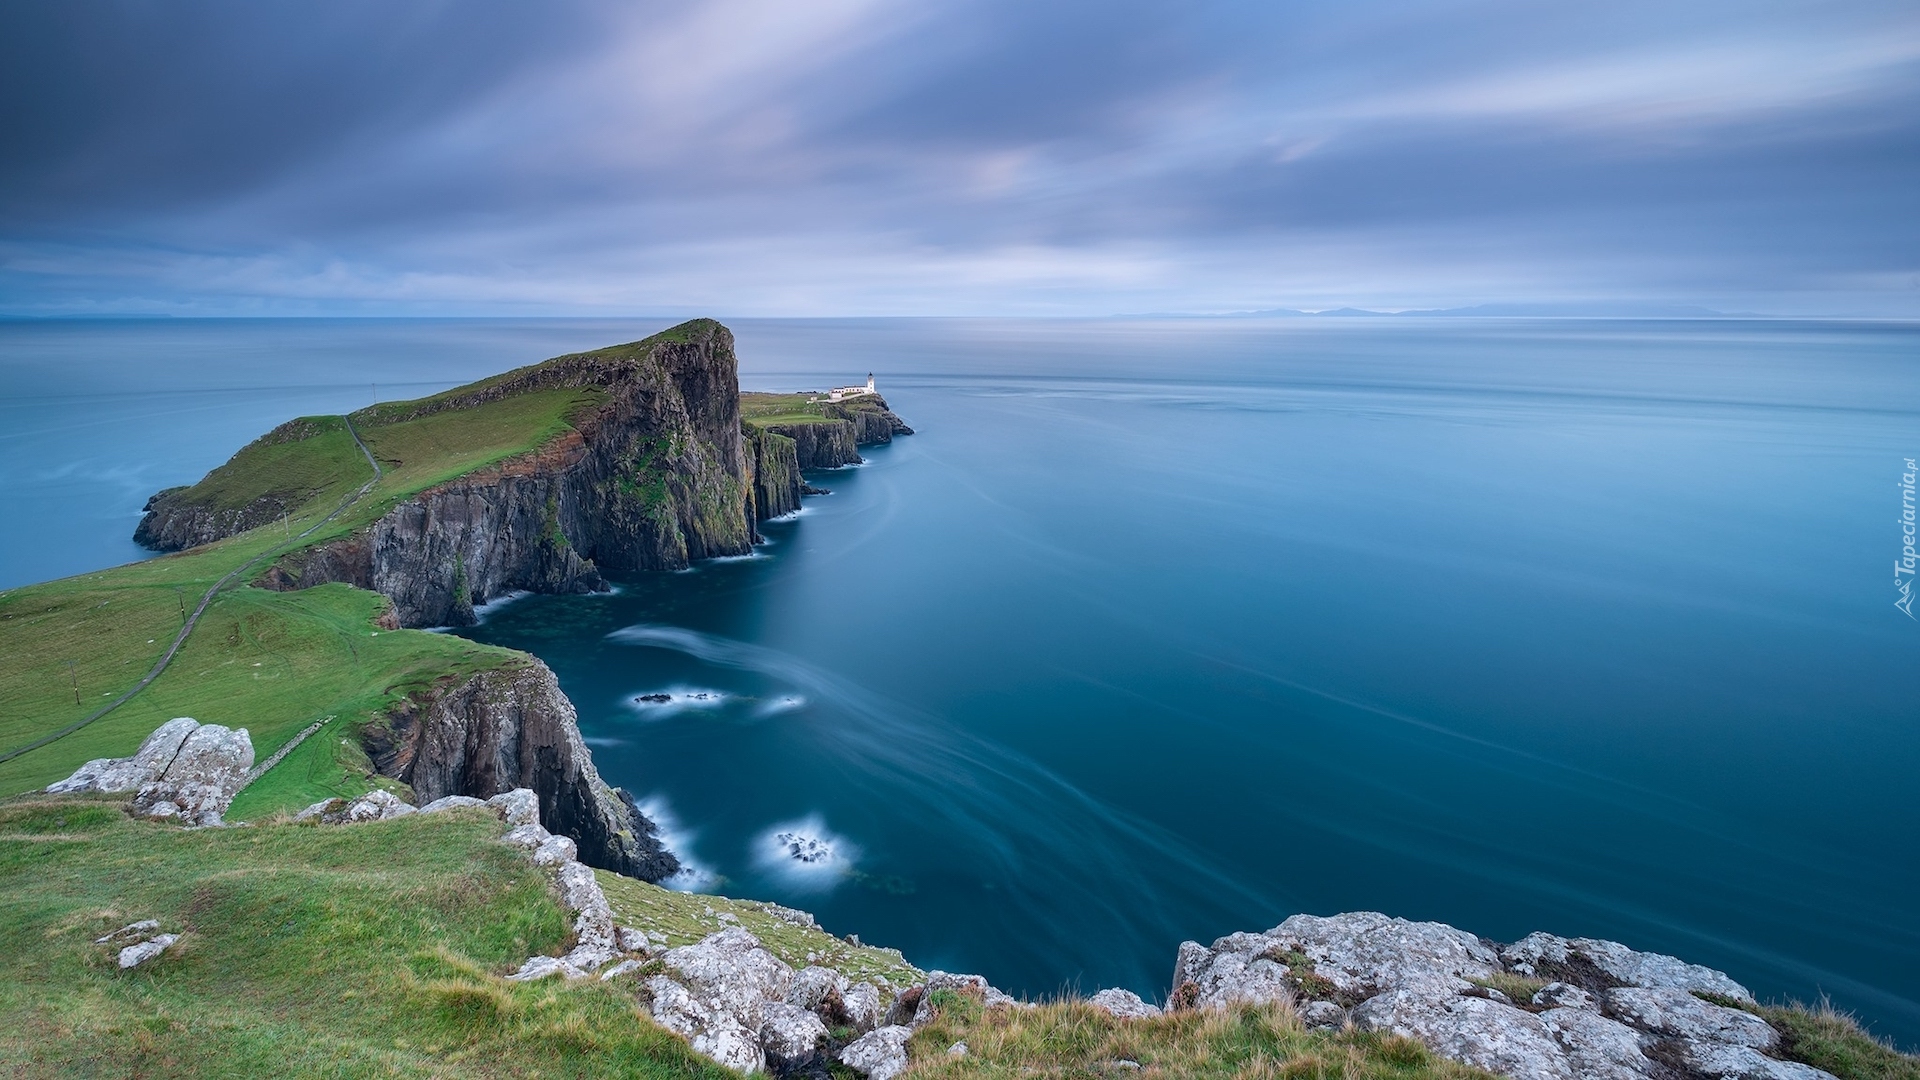 Morze Szkockie, Wybrzeże, Skały, Latarnia morska, Neist Point Lighthouse, Półwysep Duirinish, Wyspa Skye, Szkocja